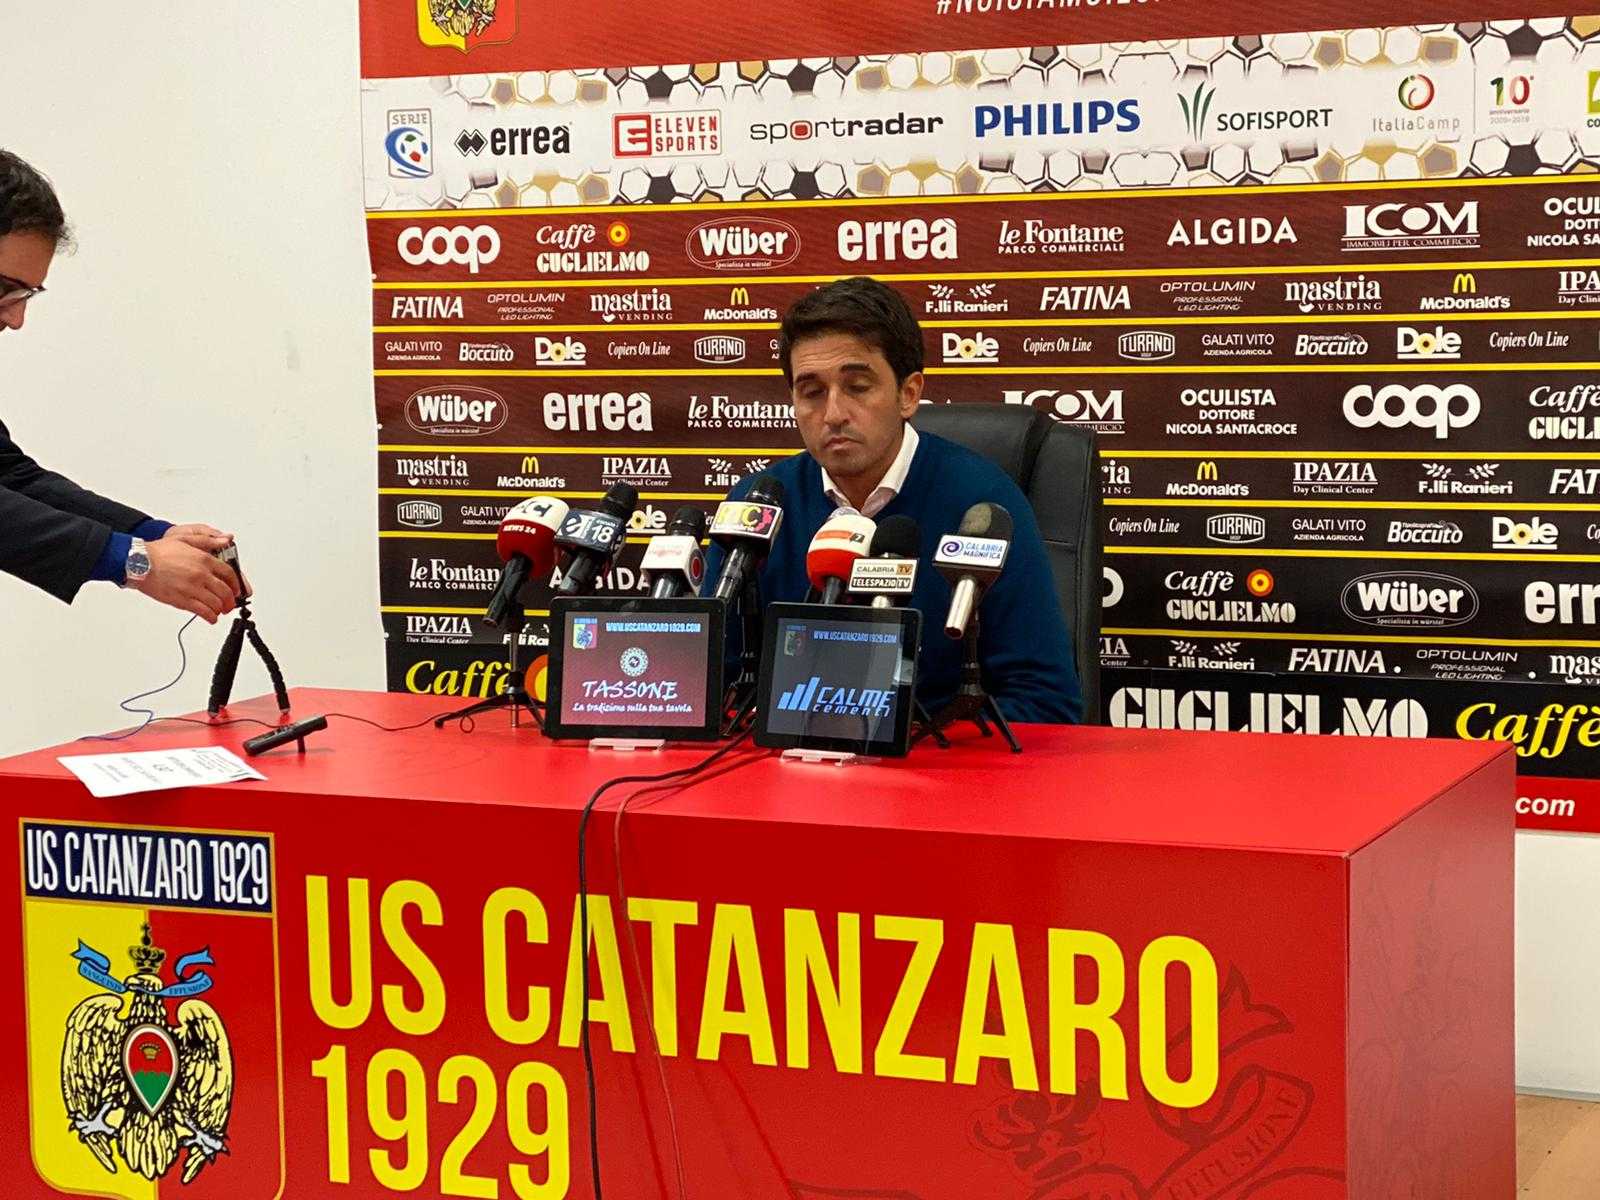 Catanzaro-Rende 1-1: i commenti nel dopo partita dei tecnici Grassadonia e Tricarico (video)